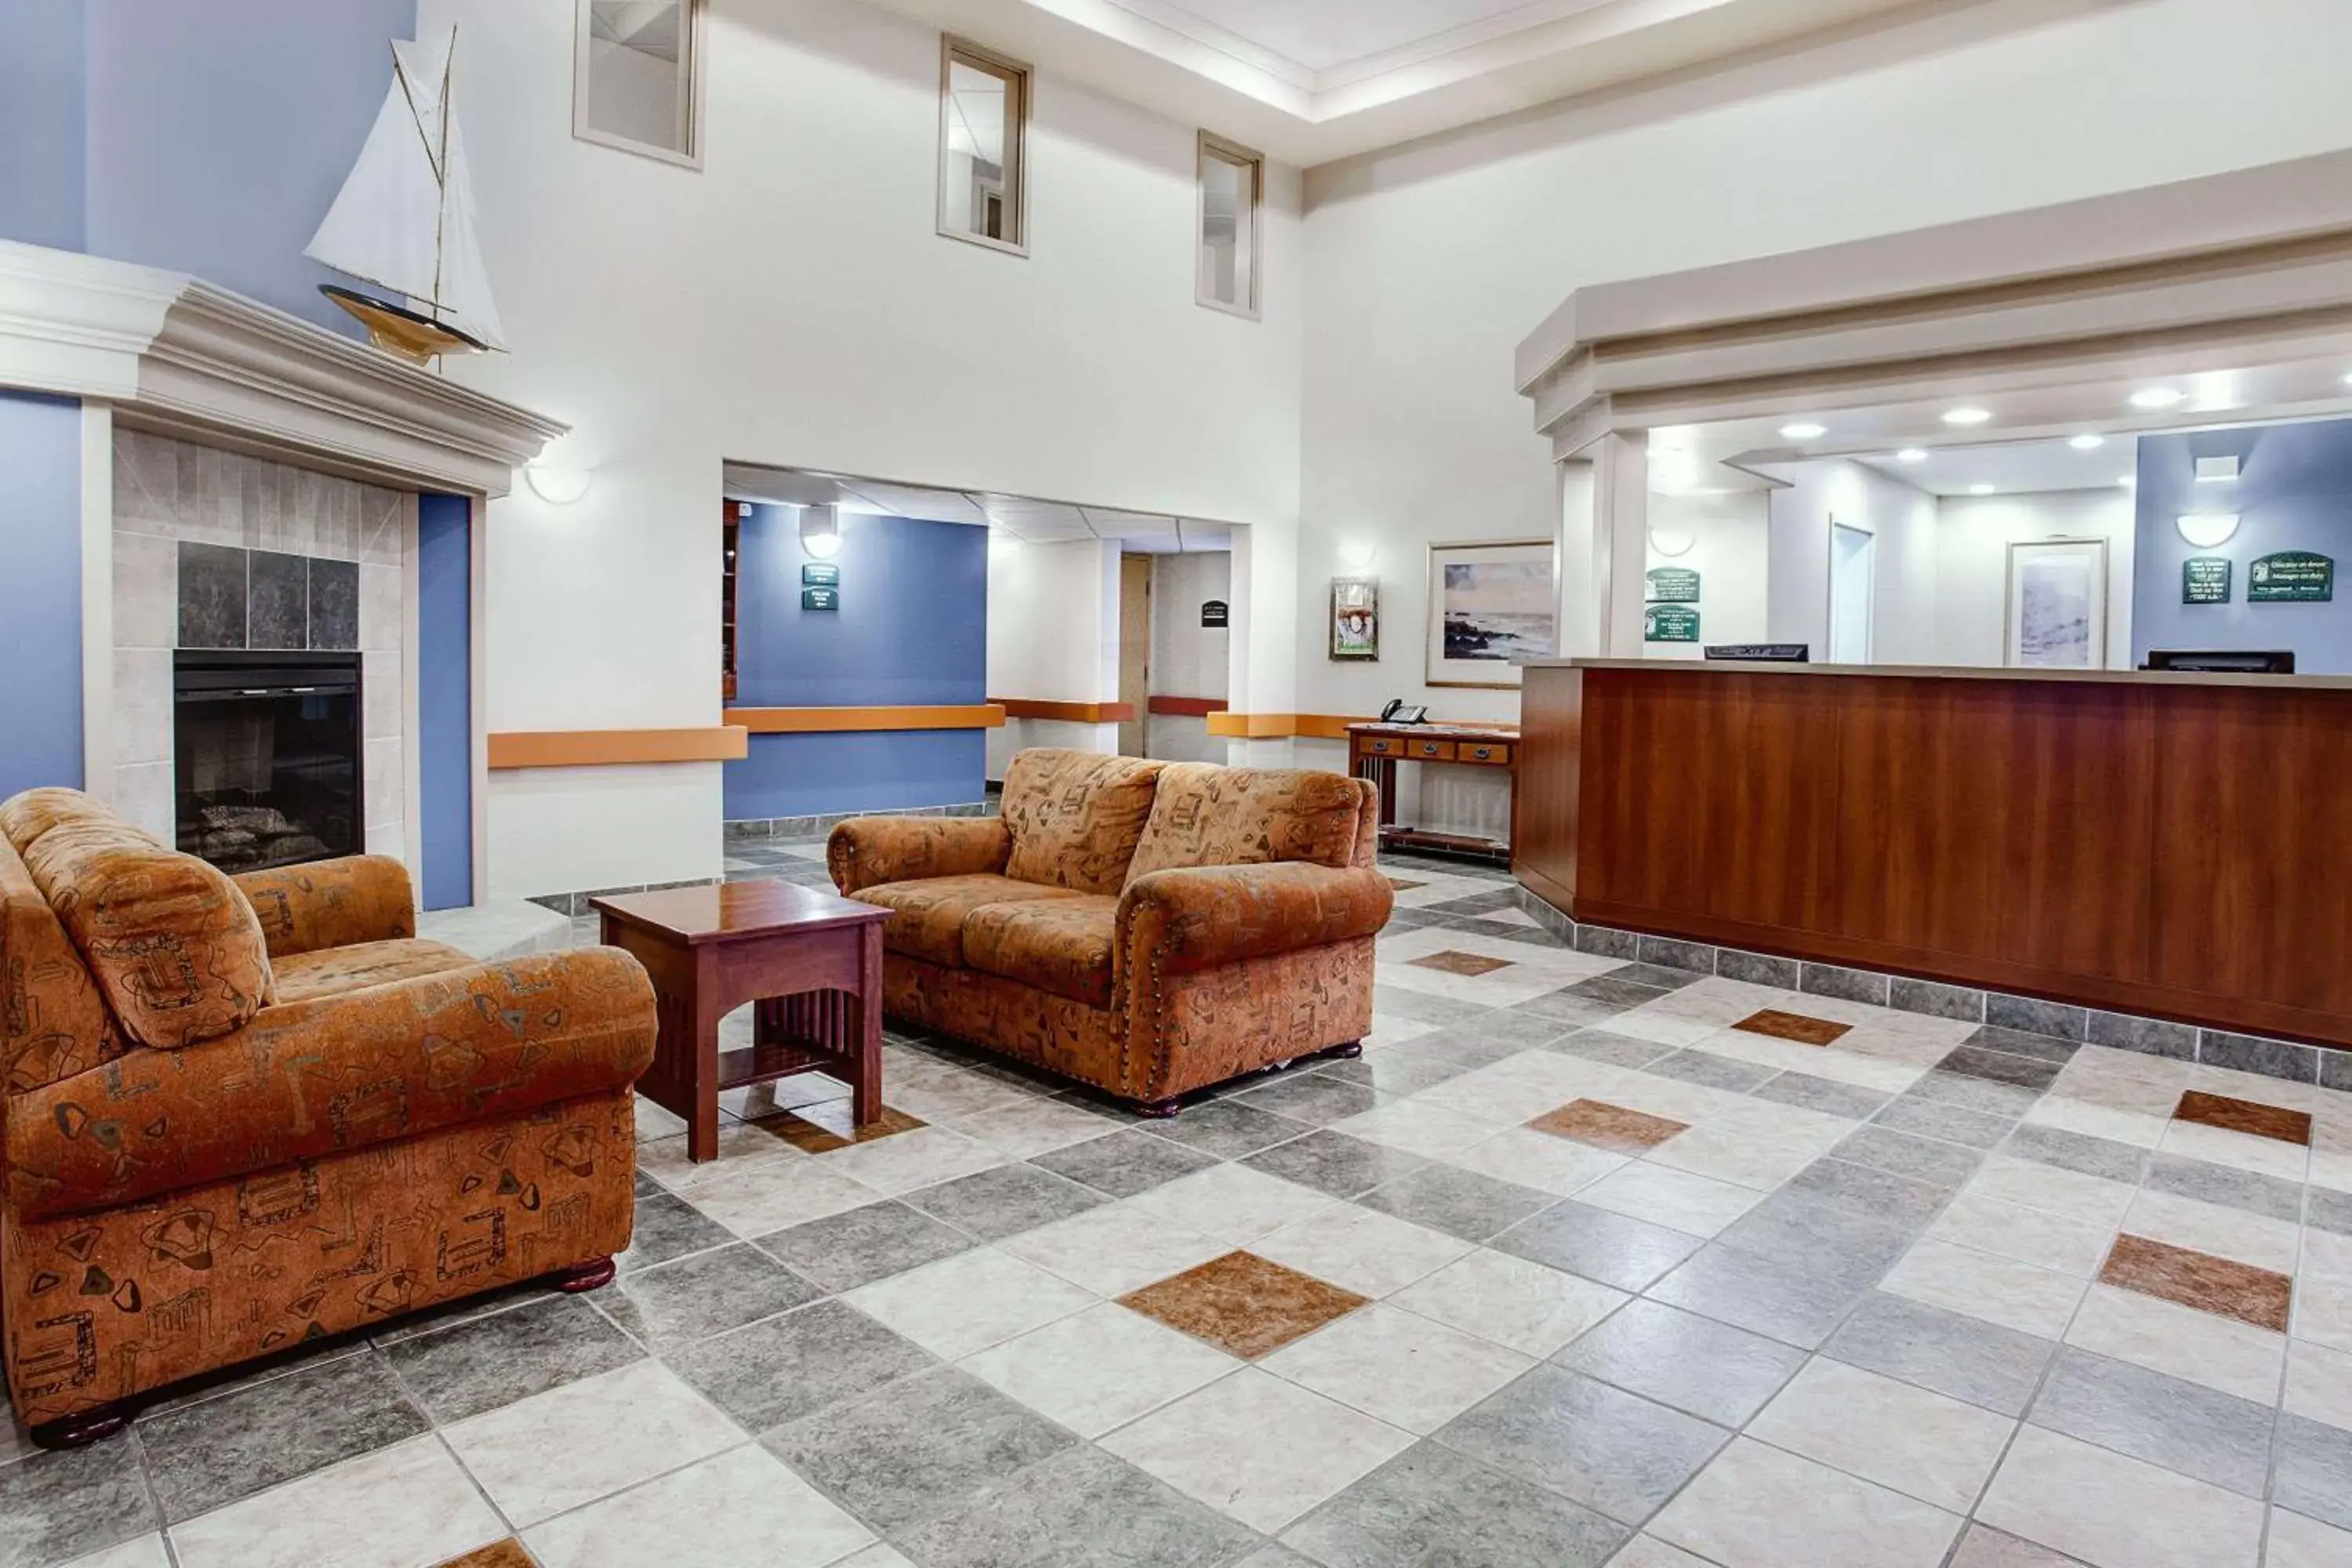 Lobby or reception, Lobby/Reception in Super 8 by Wyndham Caraquet